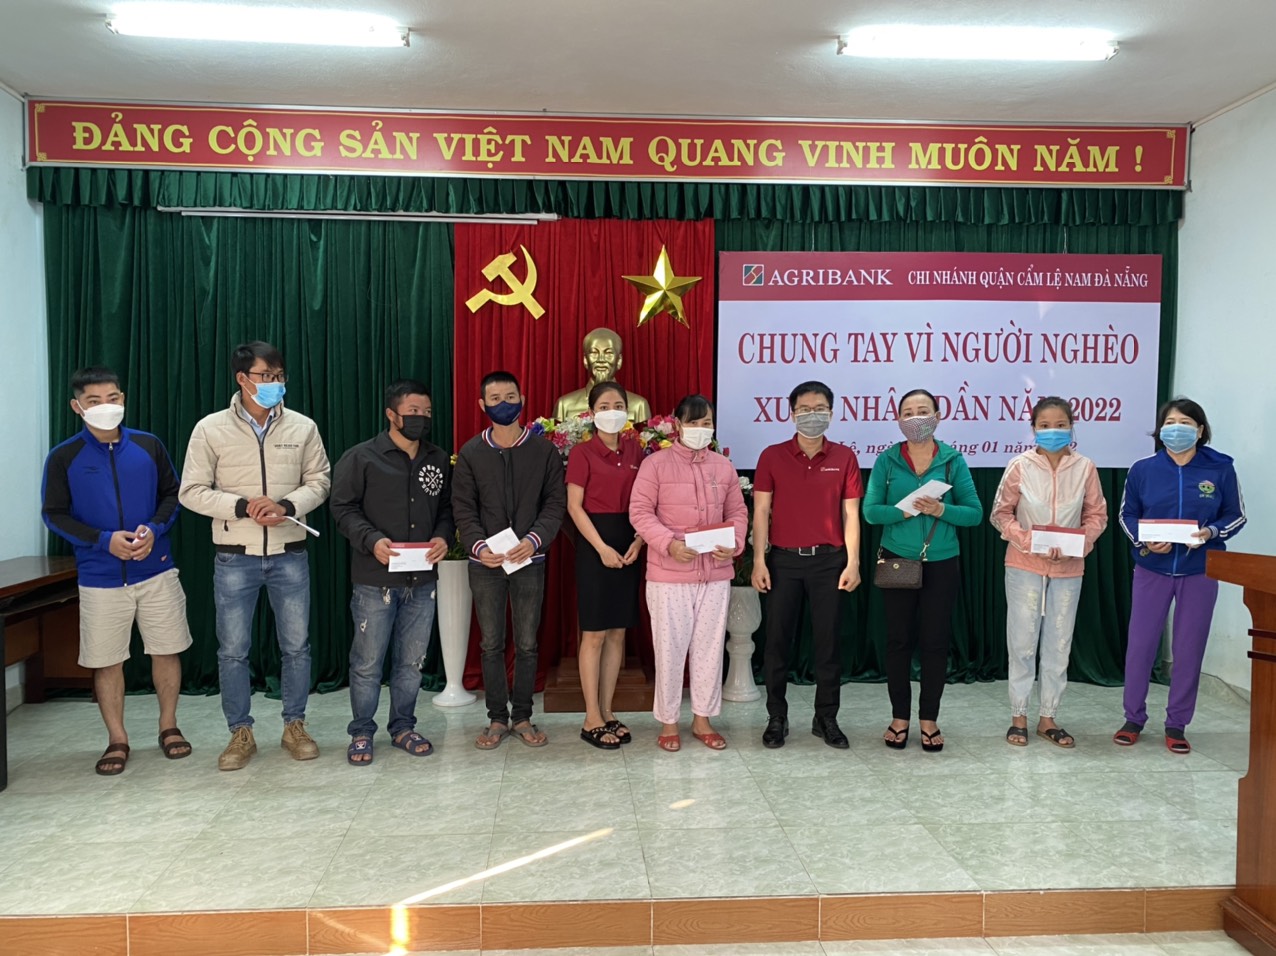 Agribank Nam Đà Nẵng chung tay vì người nghèo - Ảnh 3.